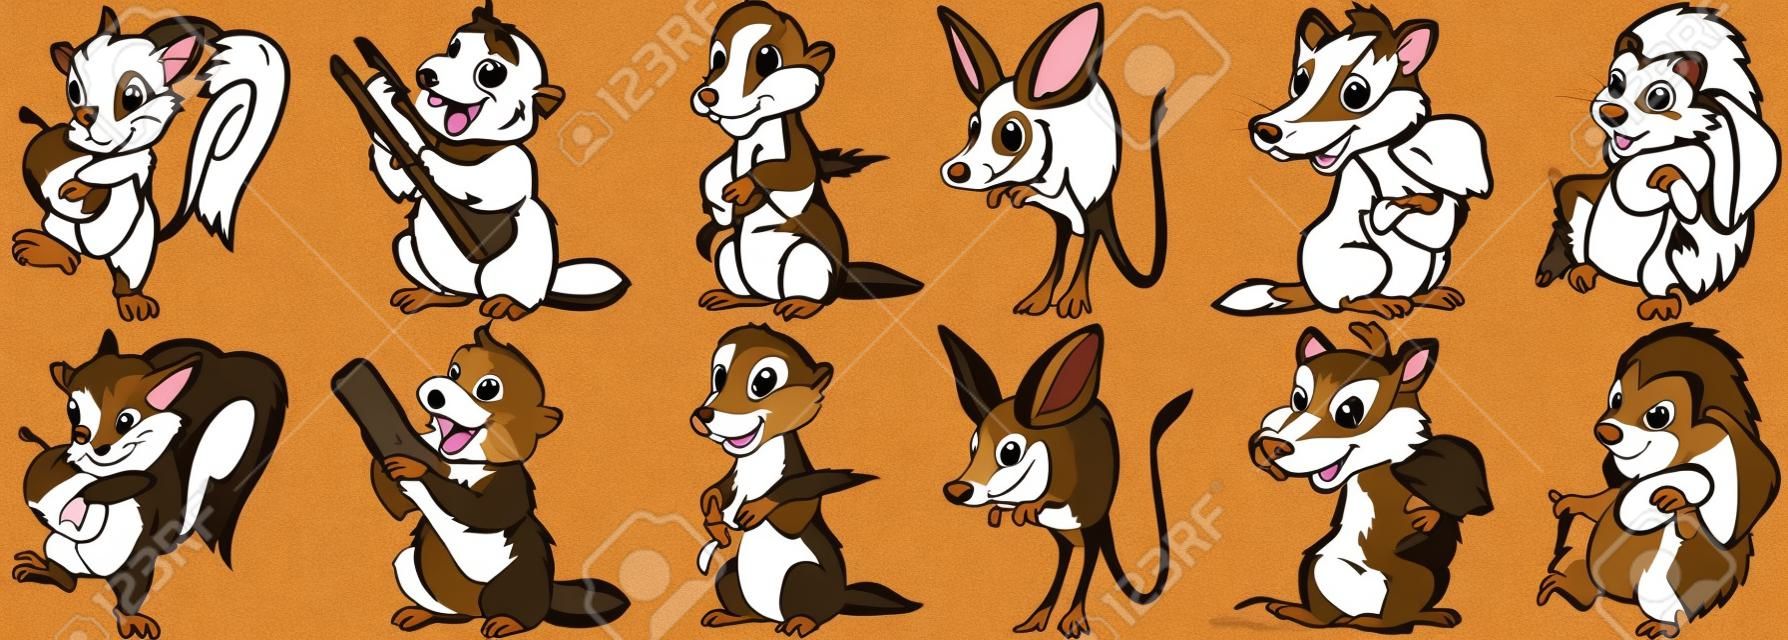 만화 동물 세트. 야생 포유류의 컬렉션입니다. 다람쥐와 도토리, 비버 목조 로그, 마 귀 (마 모트) 밀 귀, 점프 jerboa, 오소리와 버섯, 고슴도치와 버섯.